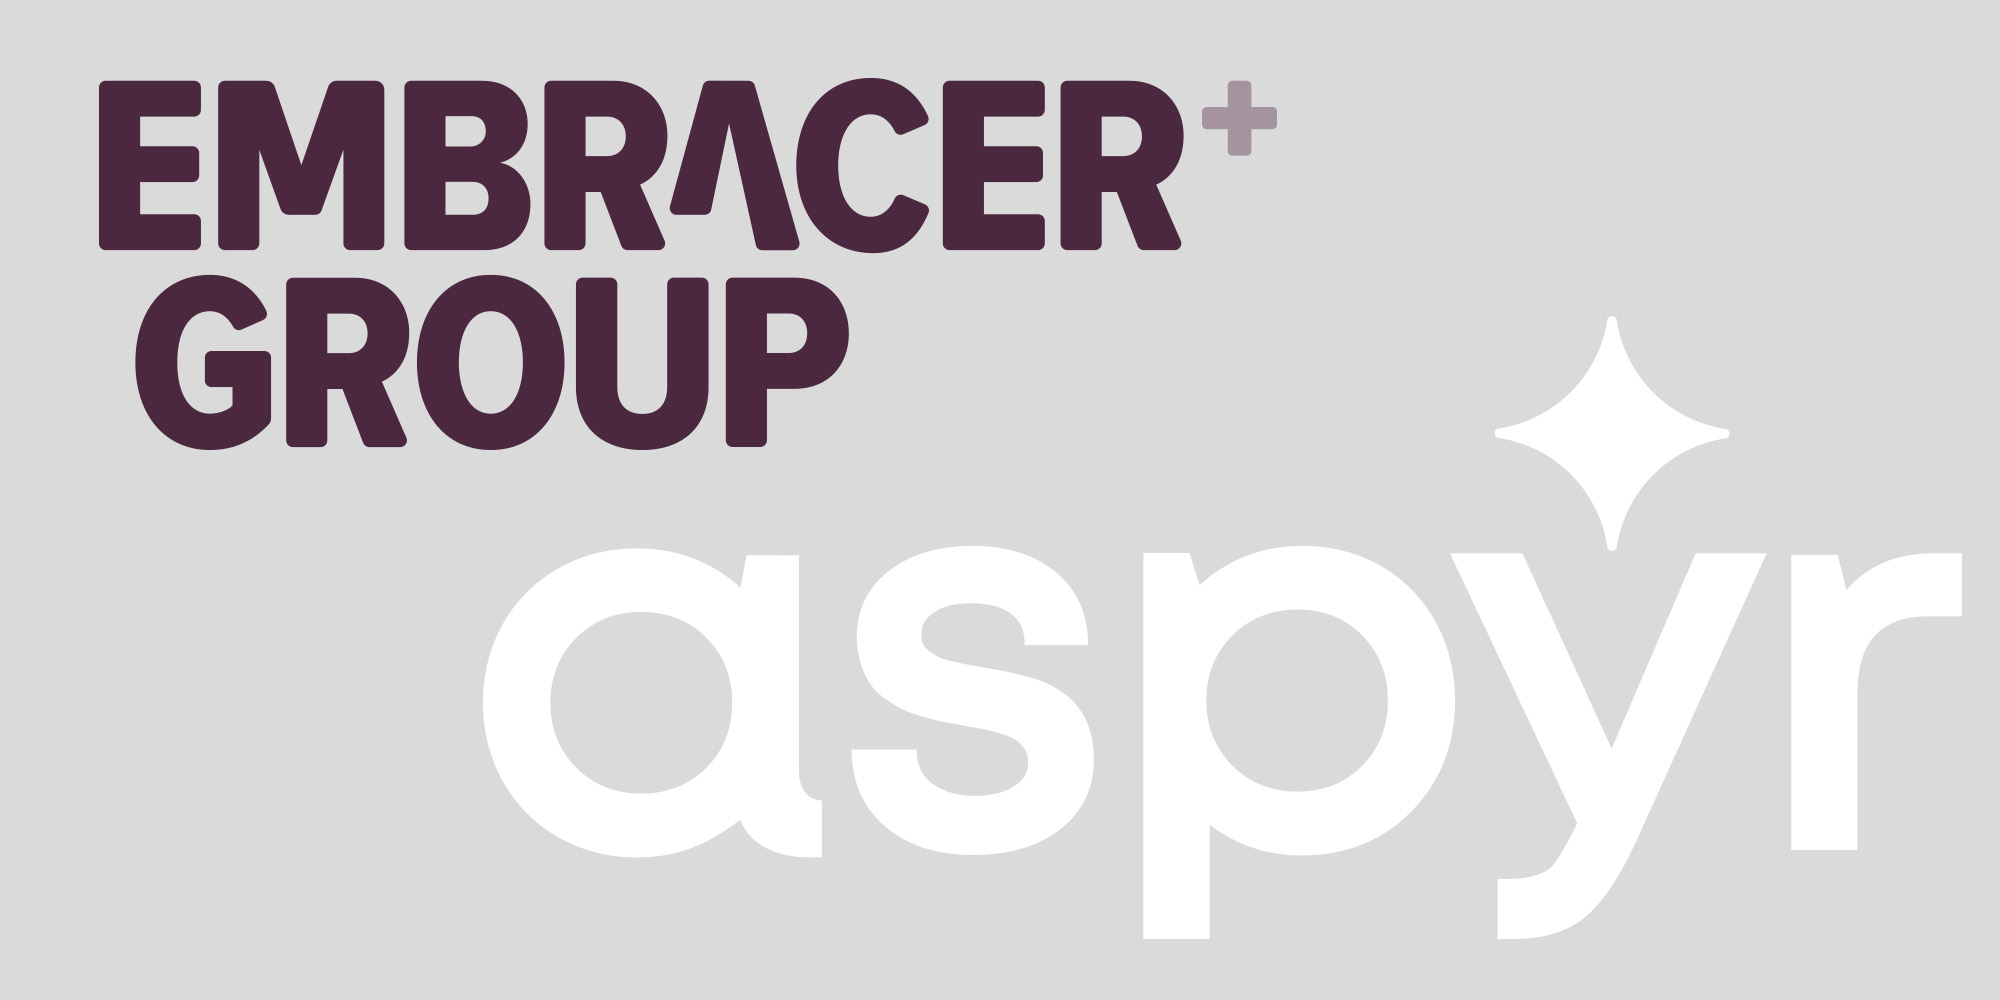 Ο Όμιλος Embracer εξαγοράζει έναν εξειδικευμένο λιμενικό οίκο Aspyr Media για πιθανά 450 εκατομμύρια δολάρια |  Ειδήσεις ανάπτυξης